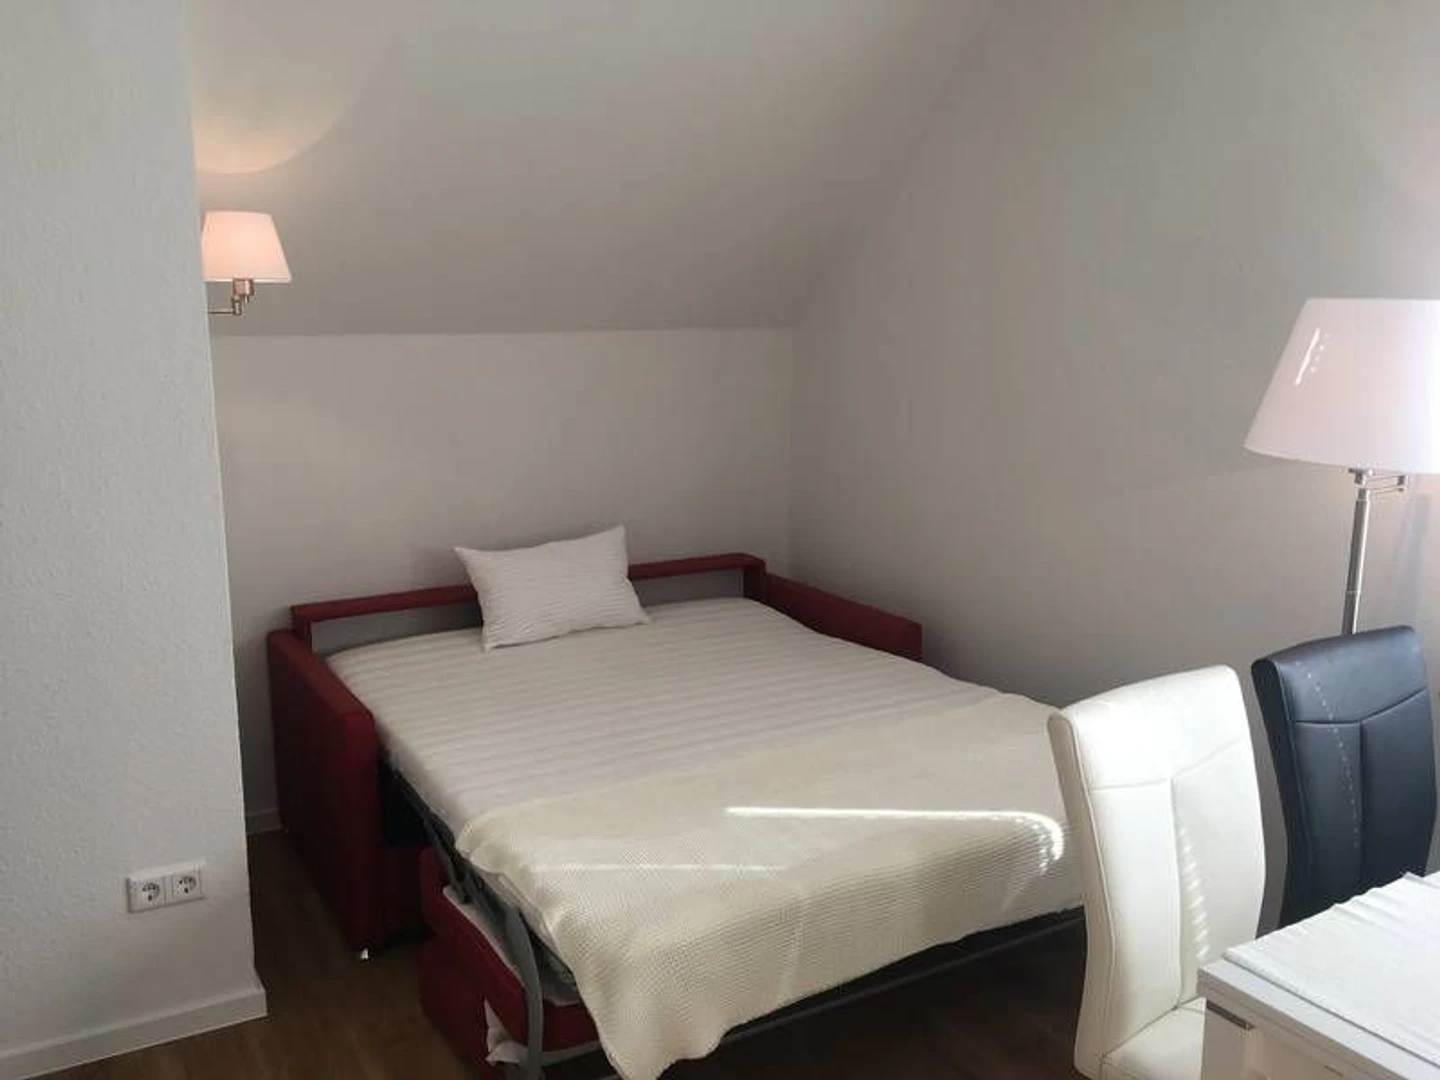 Bielefeld de çift kişilik yataklı kiralık oda